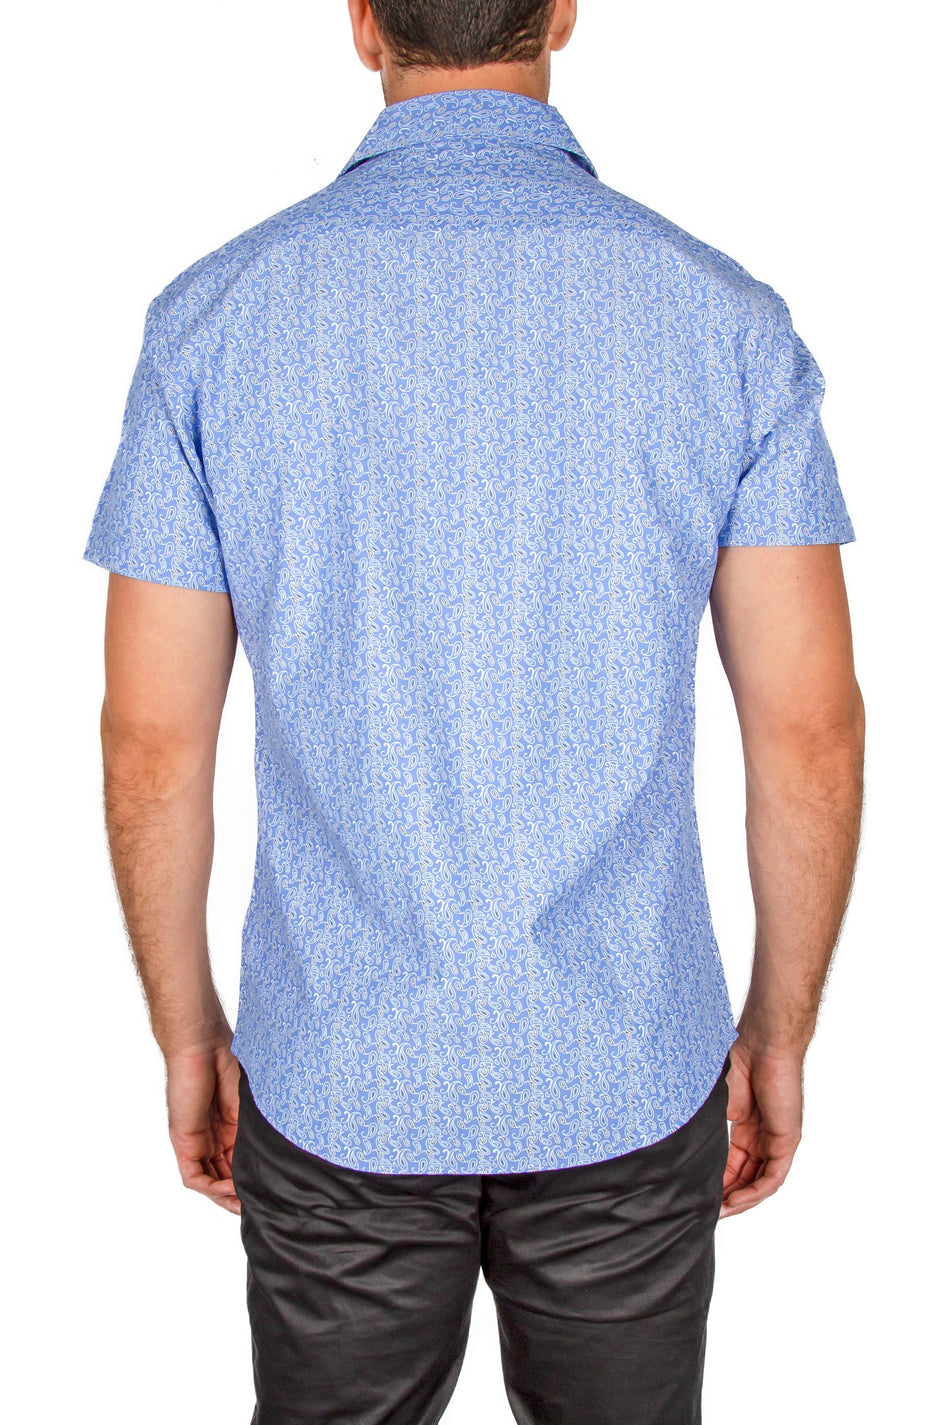 182137-mens-royal-blue-button-up-short-sleeve-dress-shirt